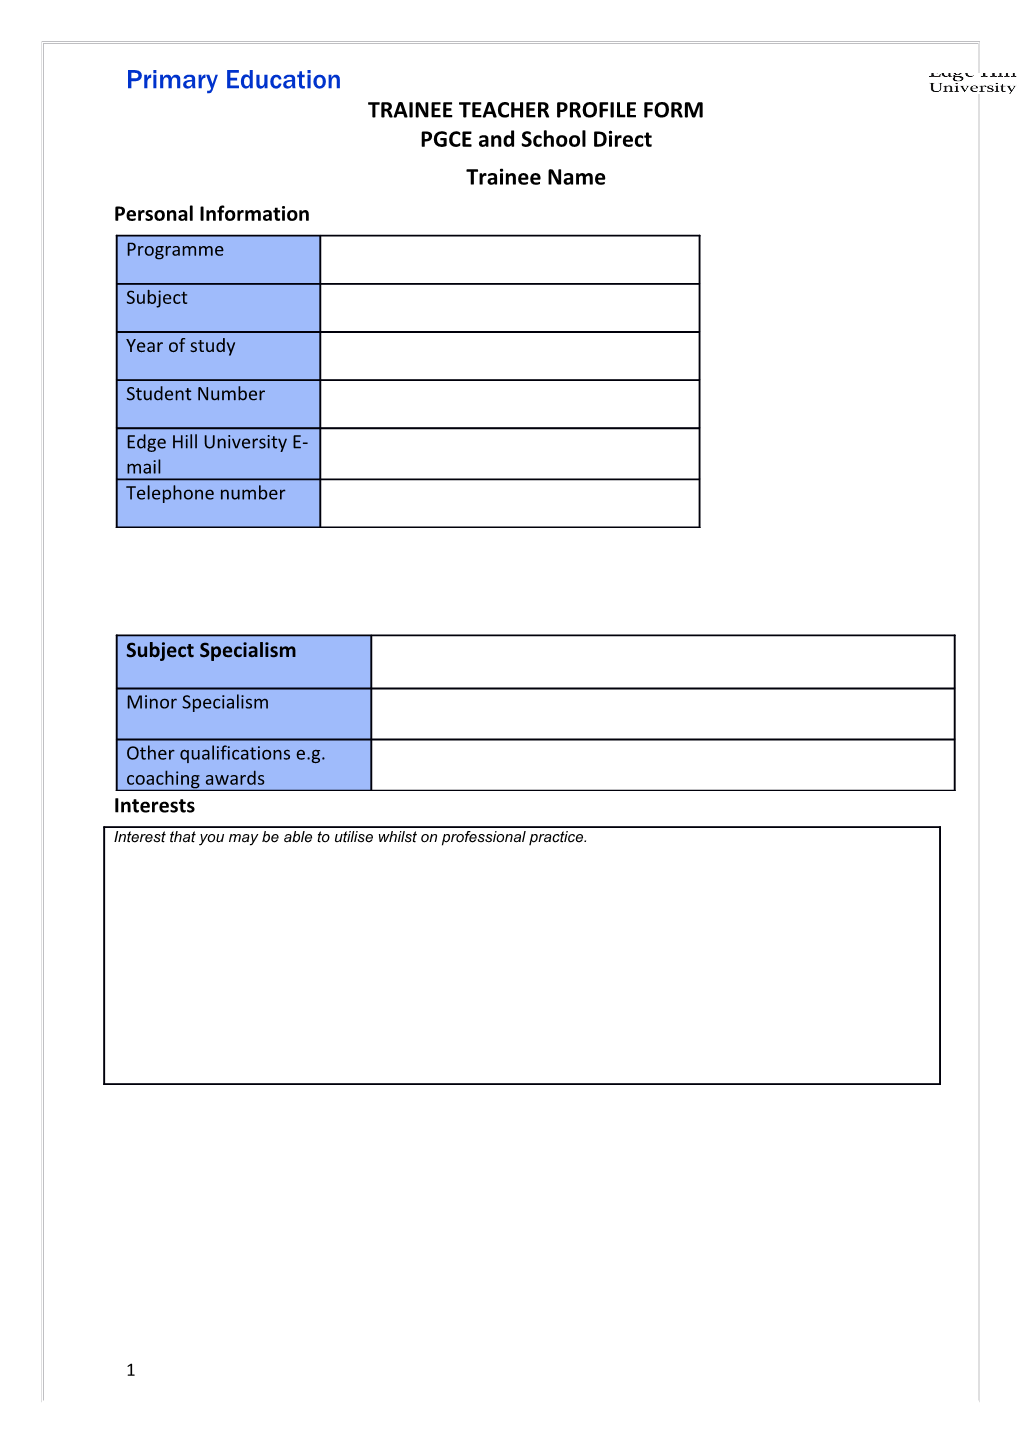 Trainee Teacher Profile Form